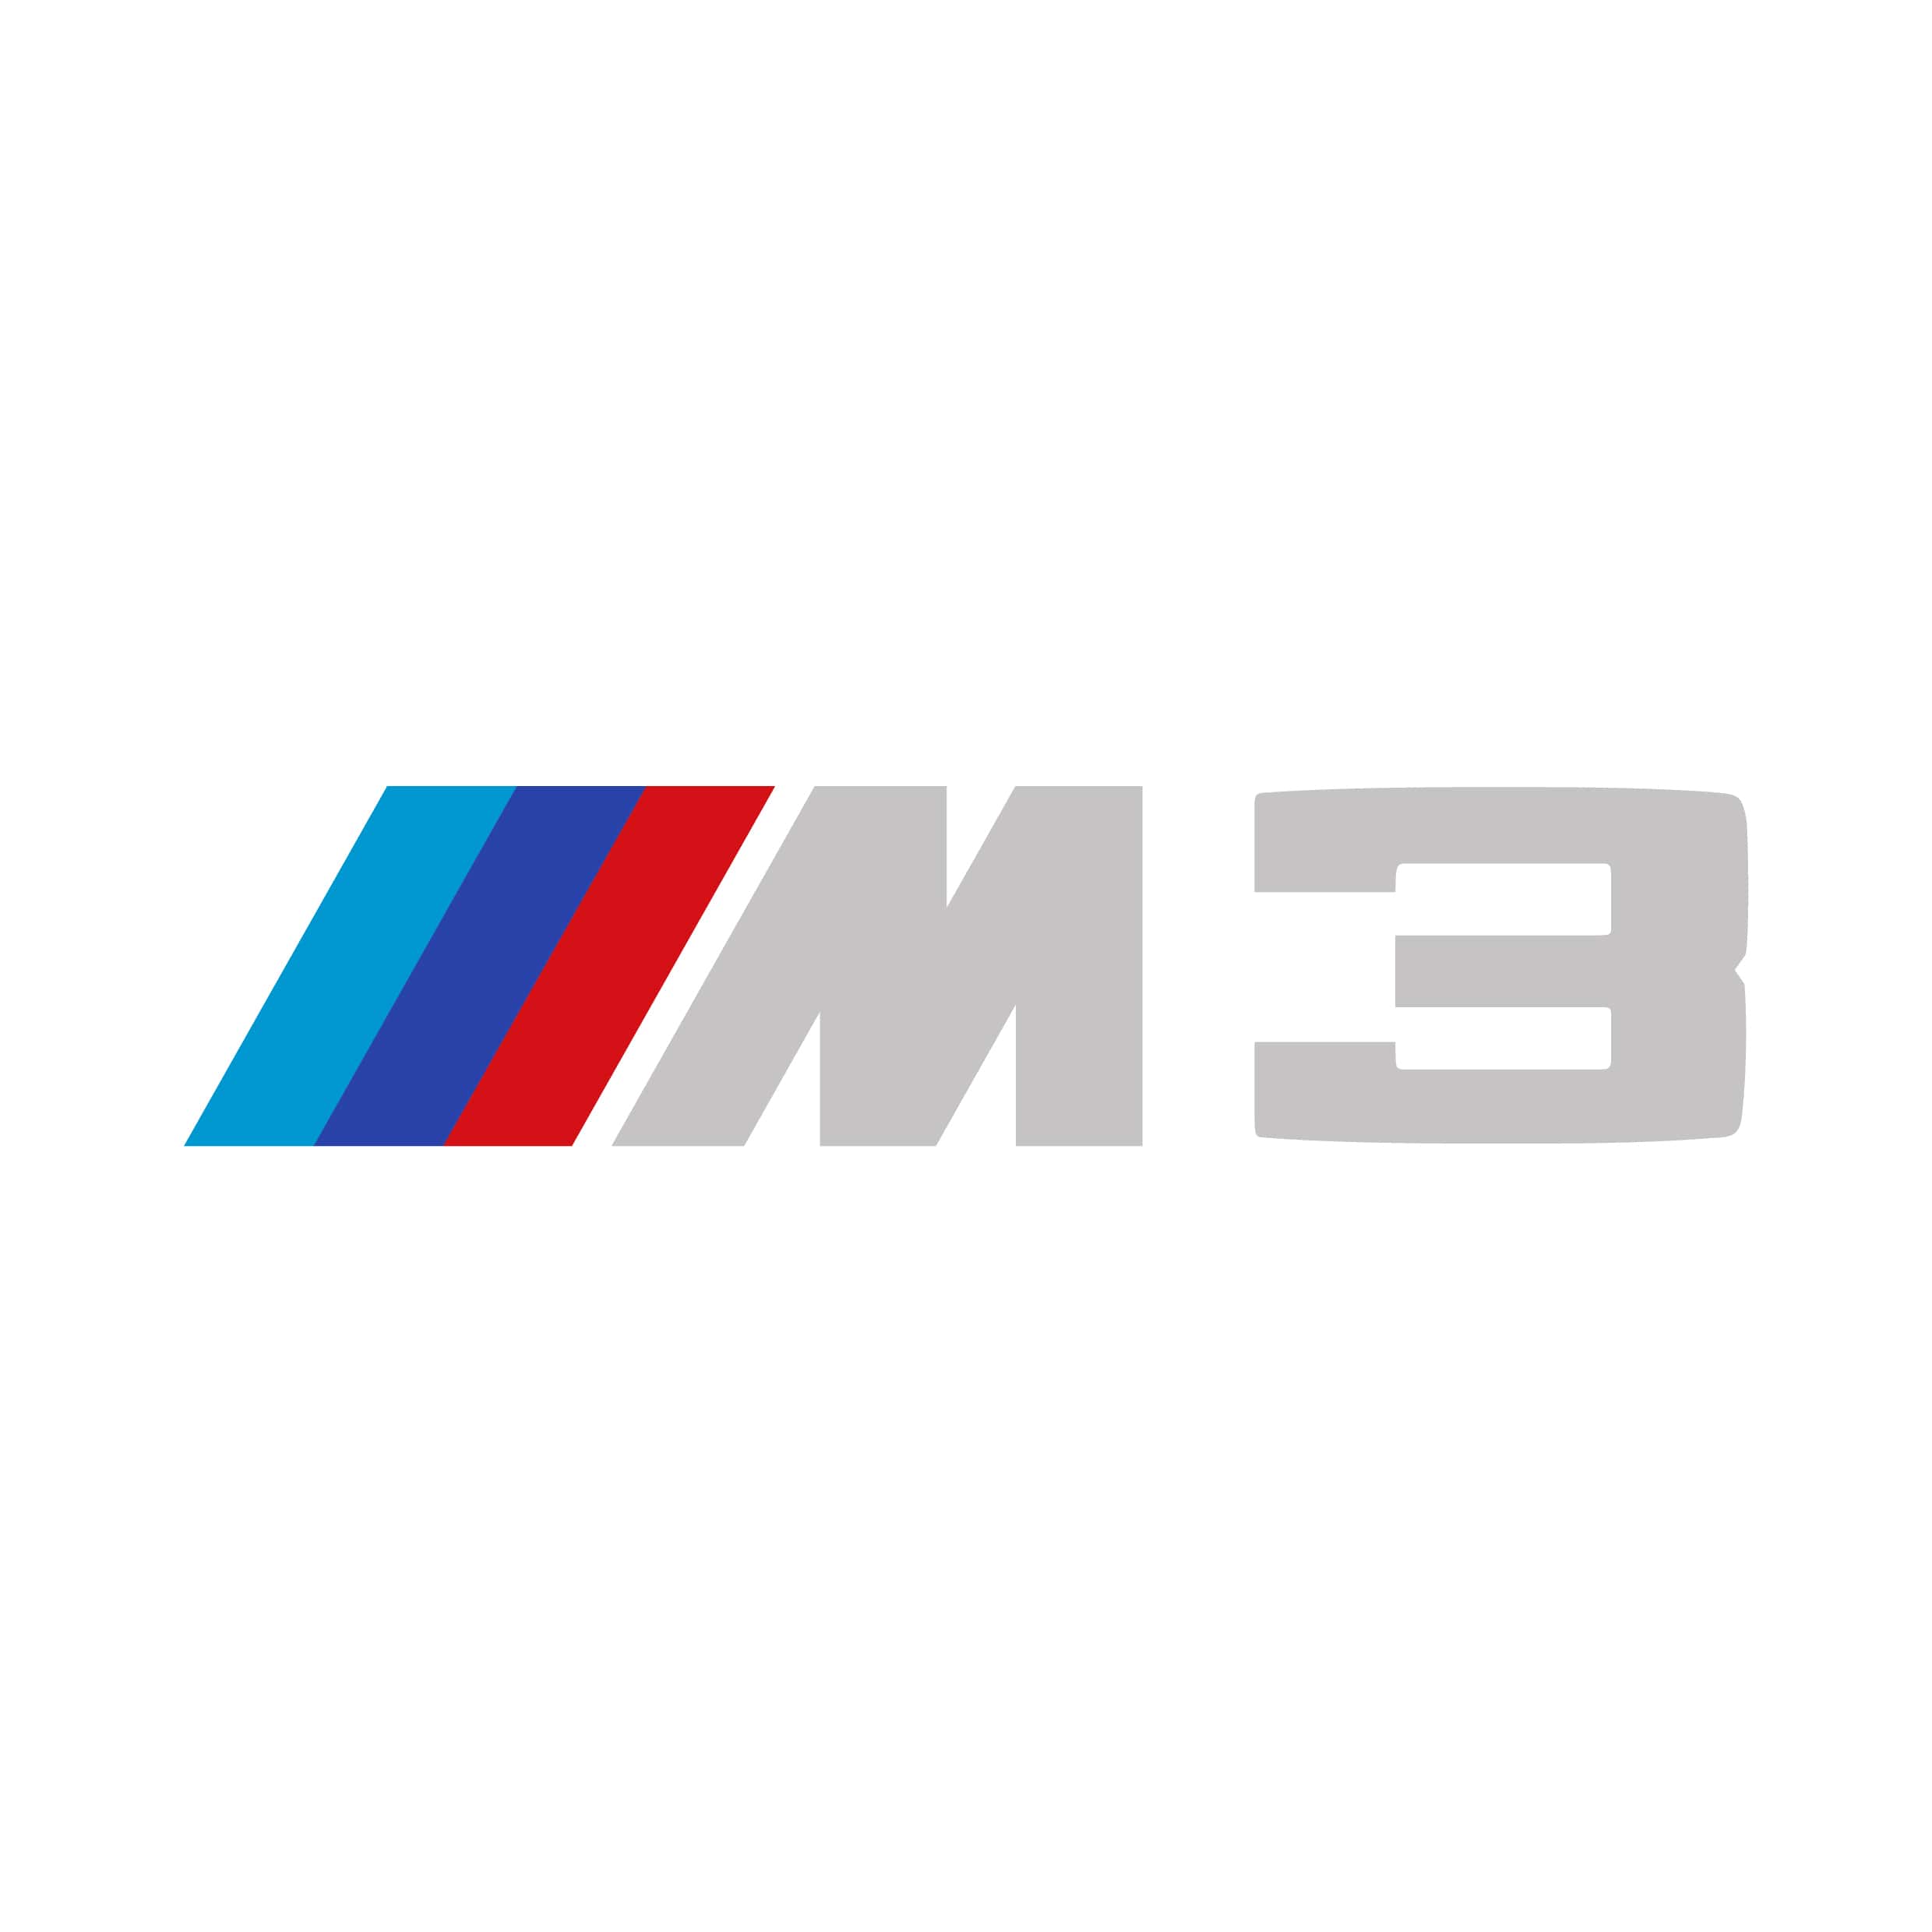 M3 Logo - Bmw m3 Logos